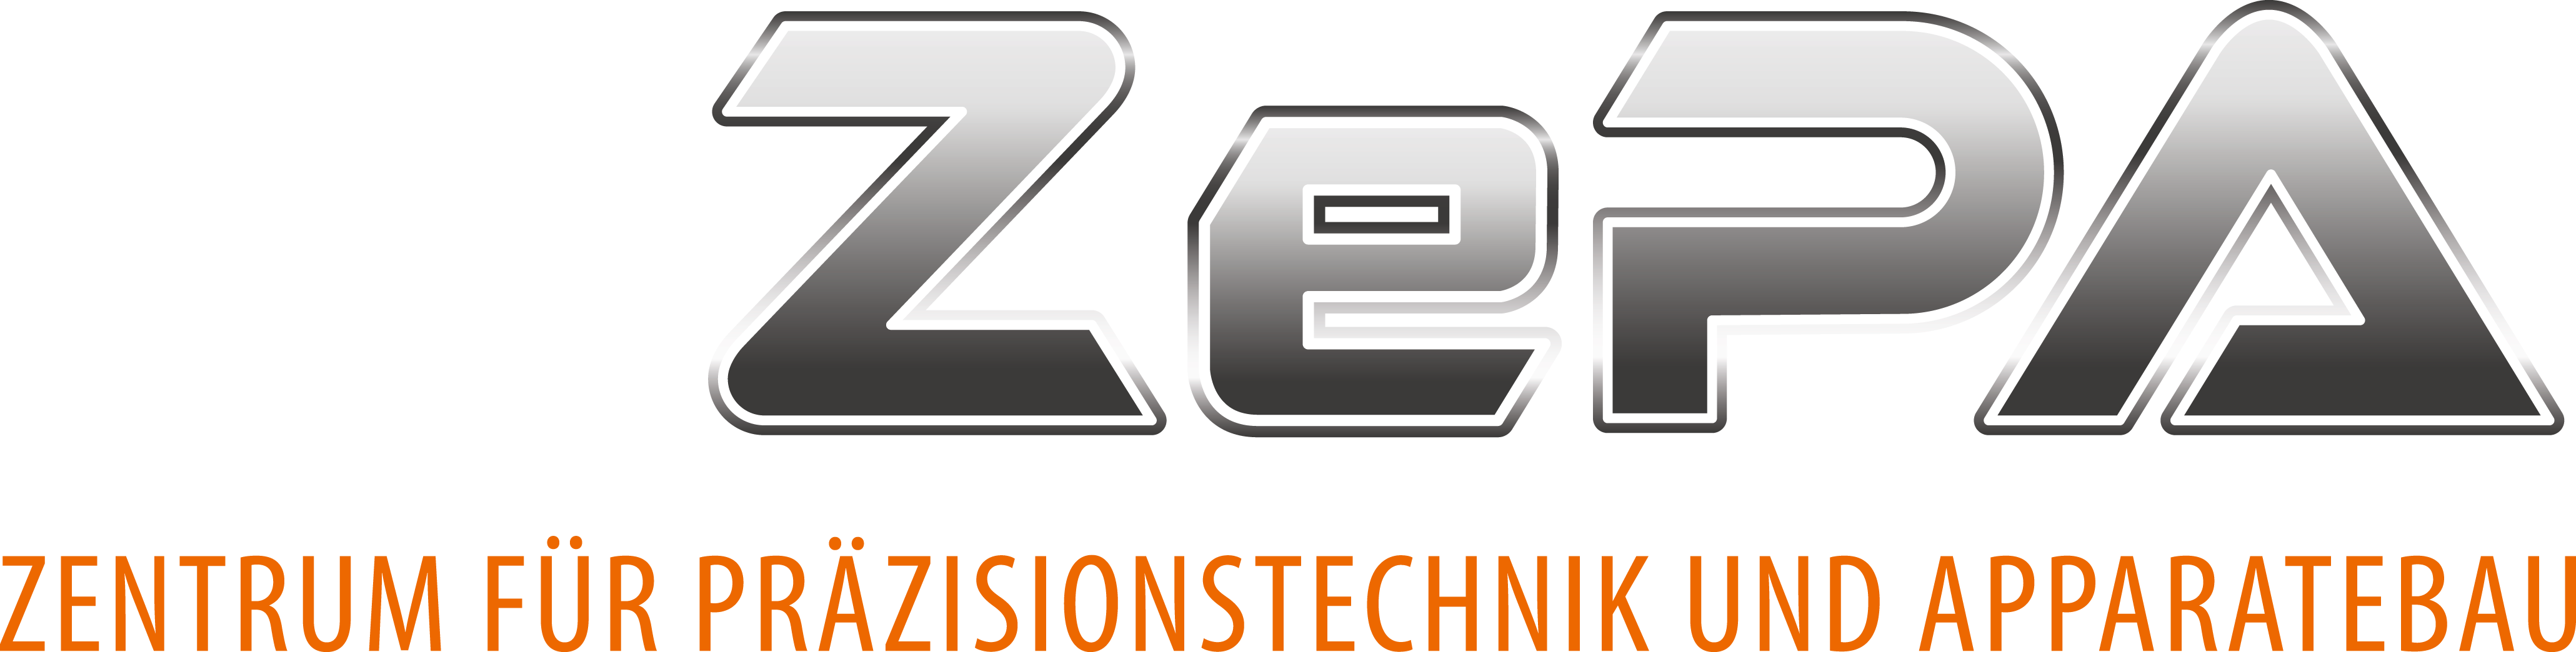 Zepa GmbH